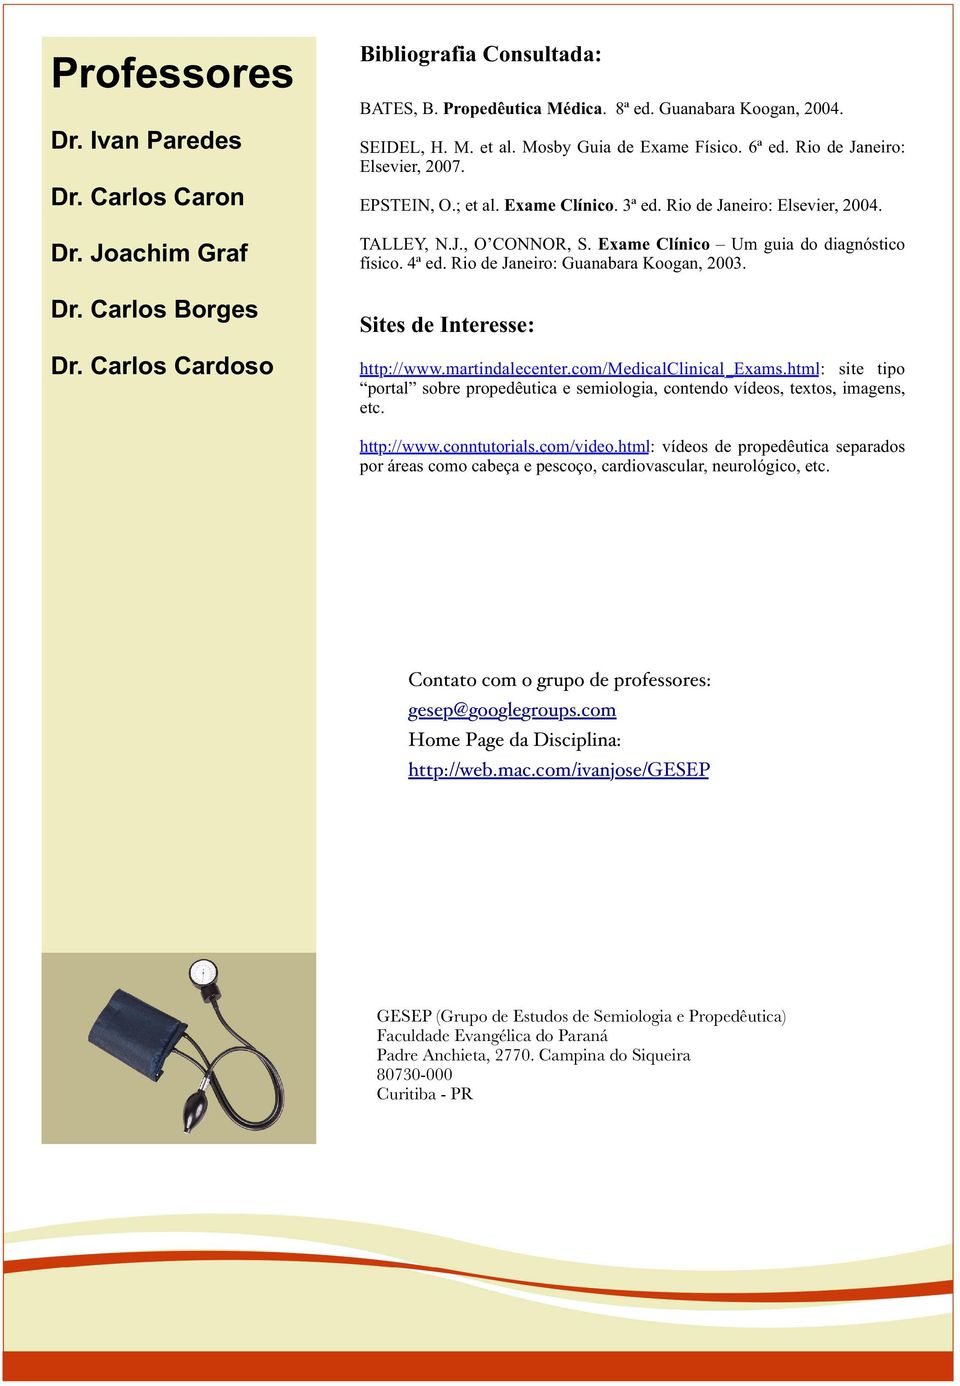 Exame Clínico Um guia do diagnóstico físico. 4ª ed. Rio de Janeiro: Guanabara Koogan, 2003. Sites de Interesse: http://www.martindalecenter.com/medicalclinical_exams.